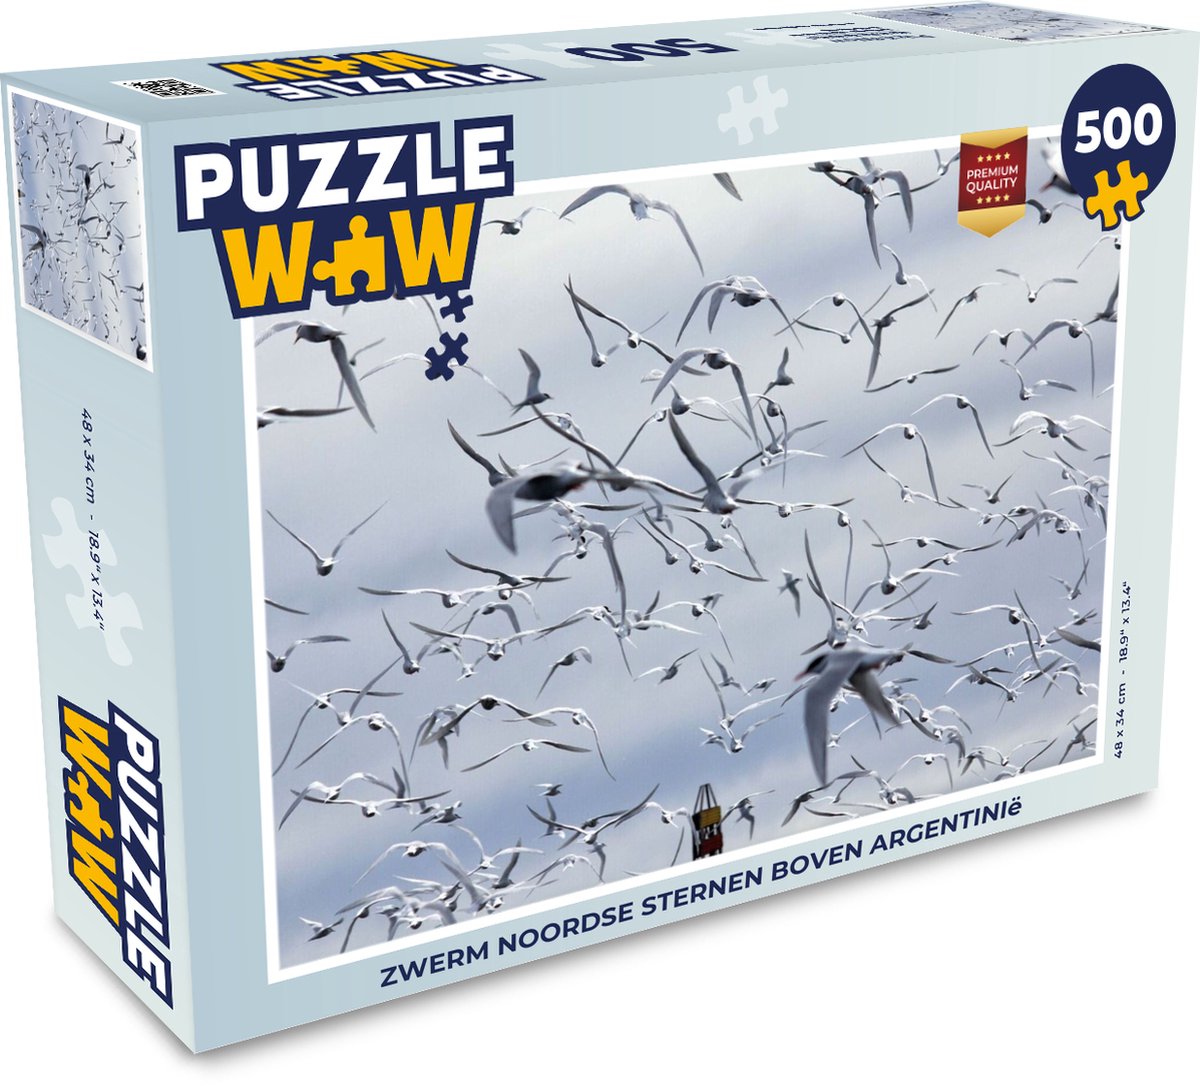 Afbeelding van product Puzzel 500 stukjes Noordse stern - Zwerm Noordse sternen boven Argentinië - PuzzleWow heeft +100000 puzzels